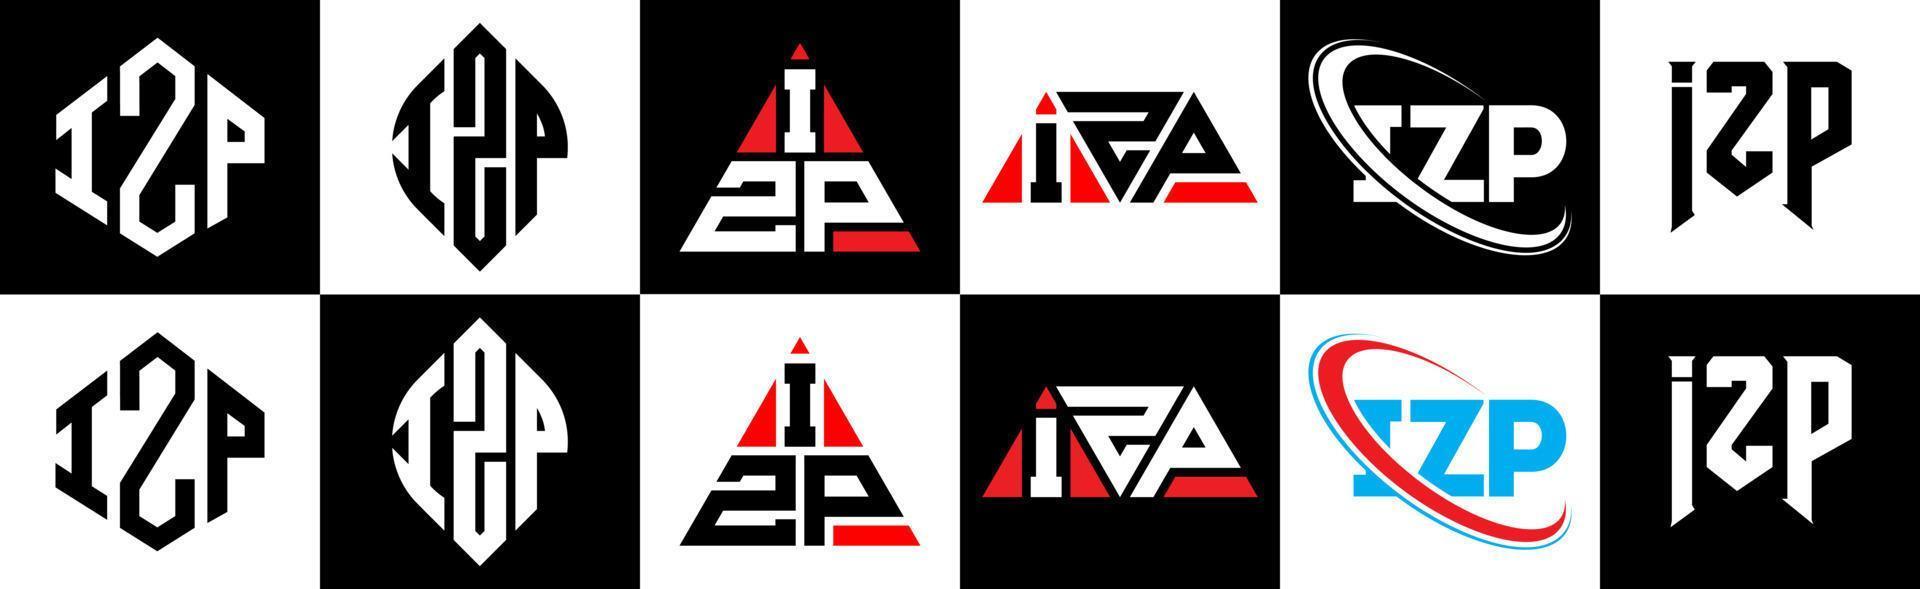 izp-Buchstaben-Logo-Design in sechs Stilen. izp polygon, kreis, dreieck, hexagon, flacher und einfacher stil mit schwarz-weißem farbvariationsbuchstabenlogo in einer zeichenfläche. izp minimalistisches und klassisches Logo vektor